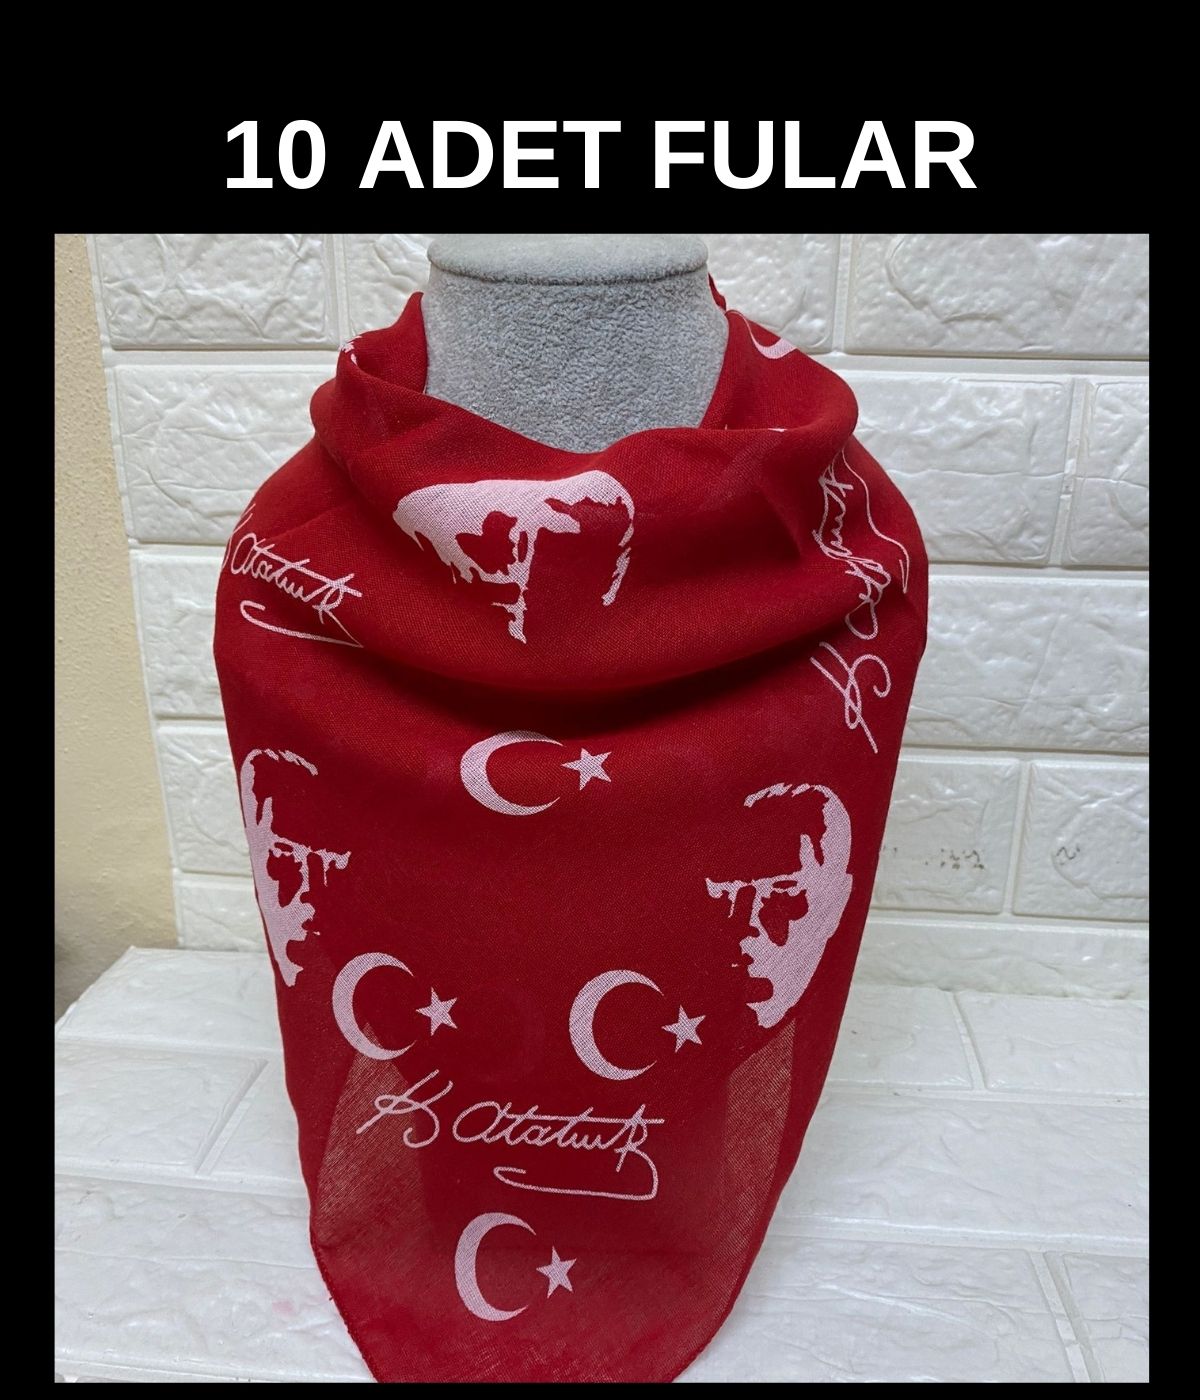 10 Adet 100. Yıla Özel Kırmızı Ay Yıldız Ve Atatürk Silüetli Imzalı Fular - 23 Nisan, 29 Ekim, 19 Mayıs